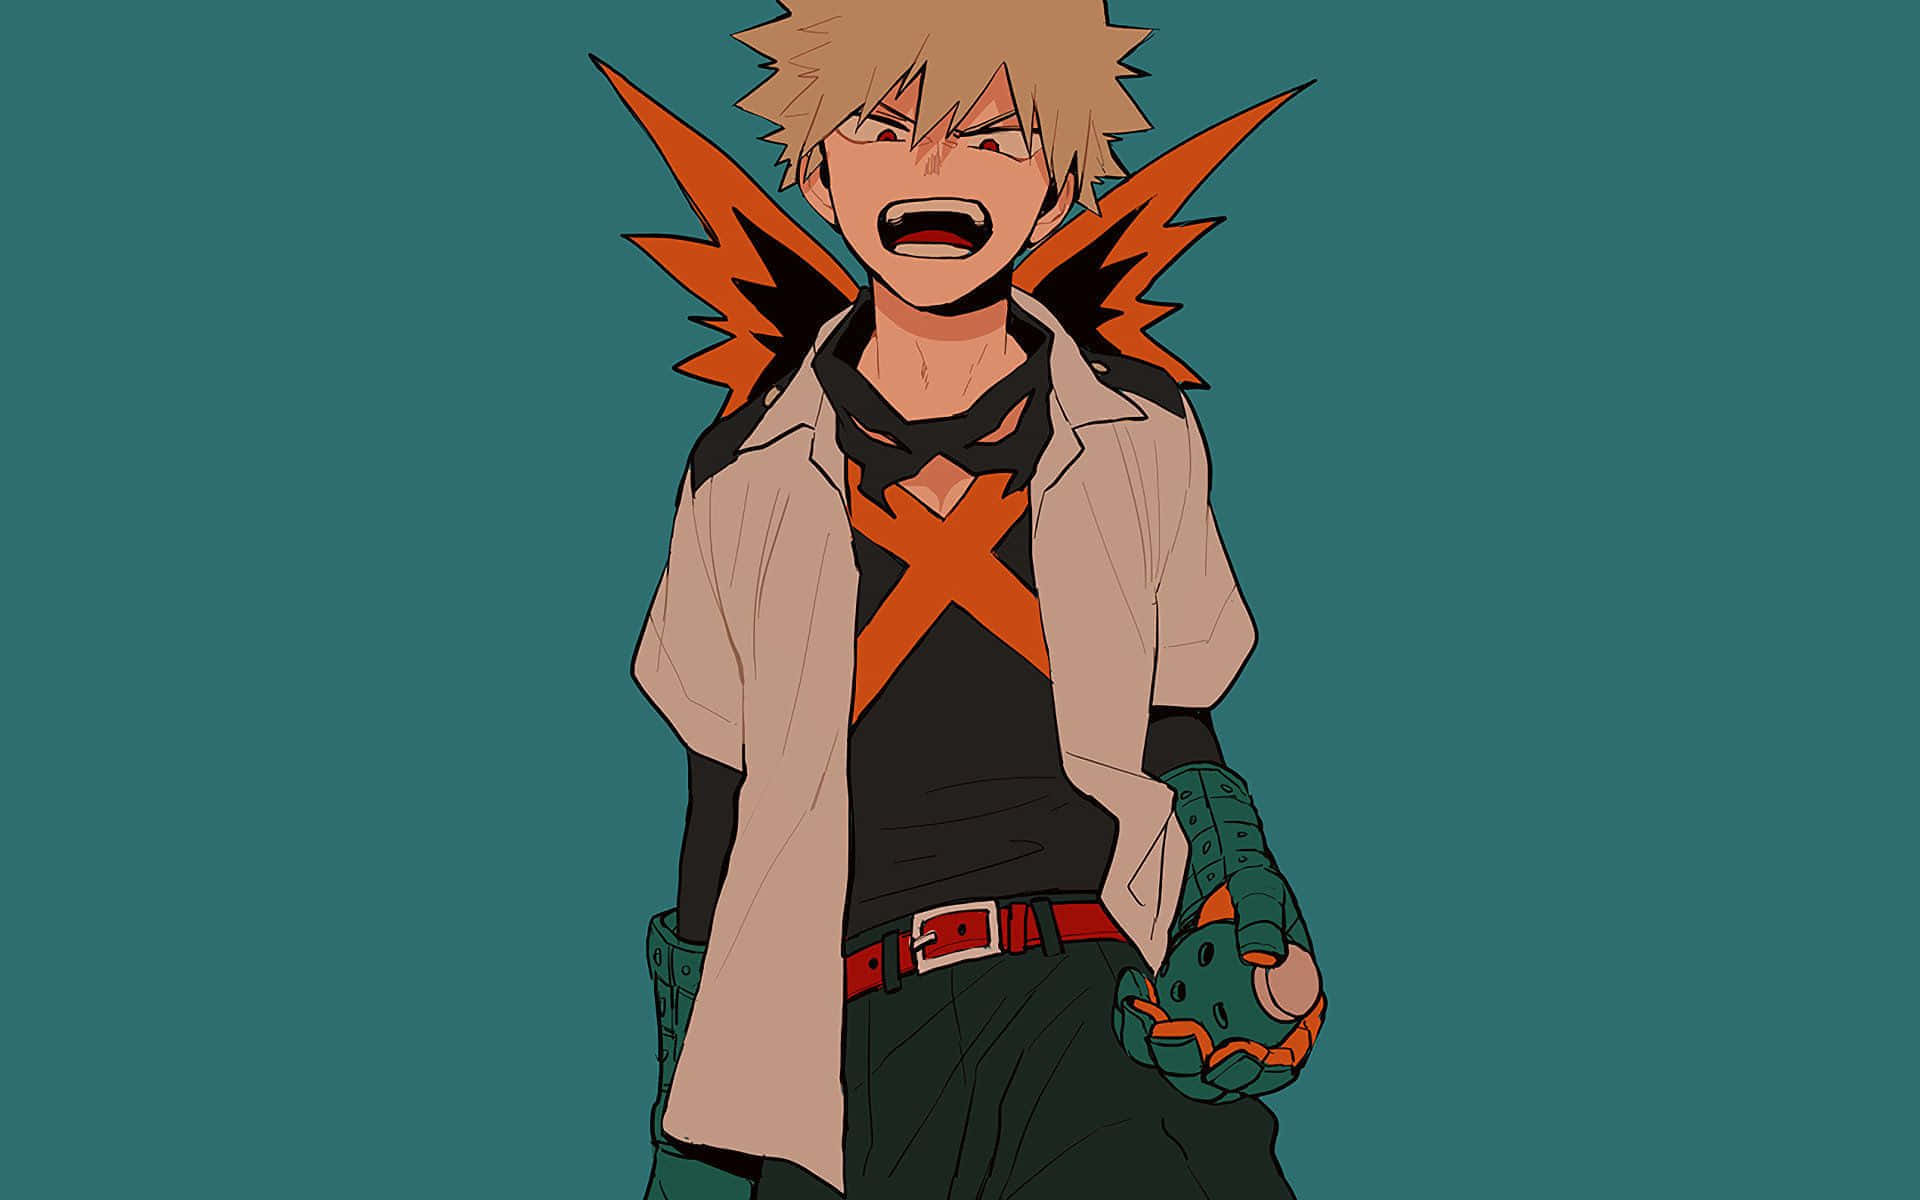 Angry Anime Character Artwork Wallpaper